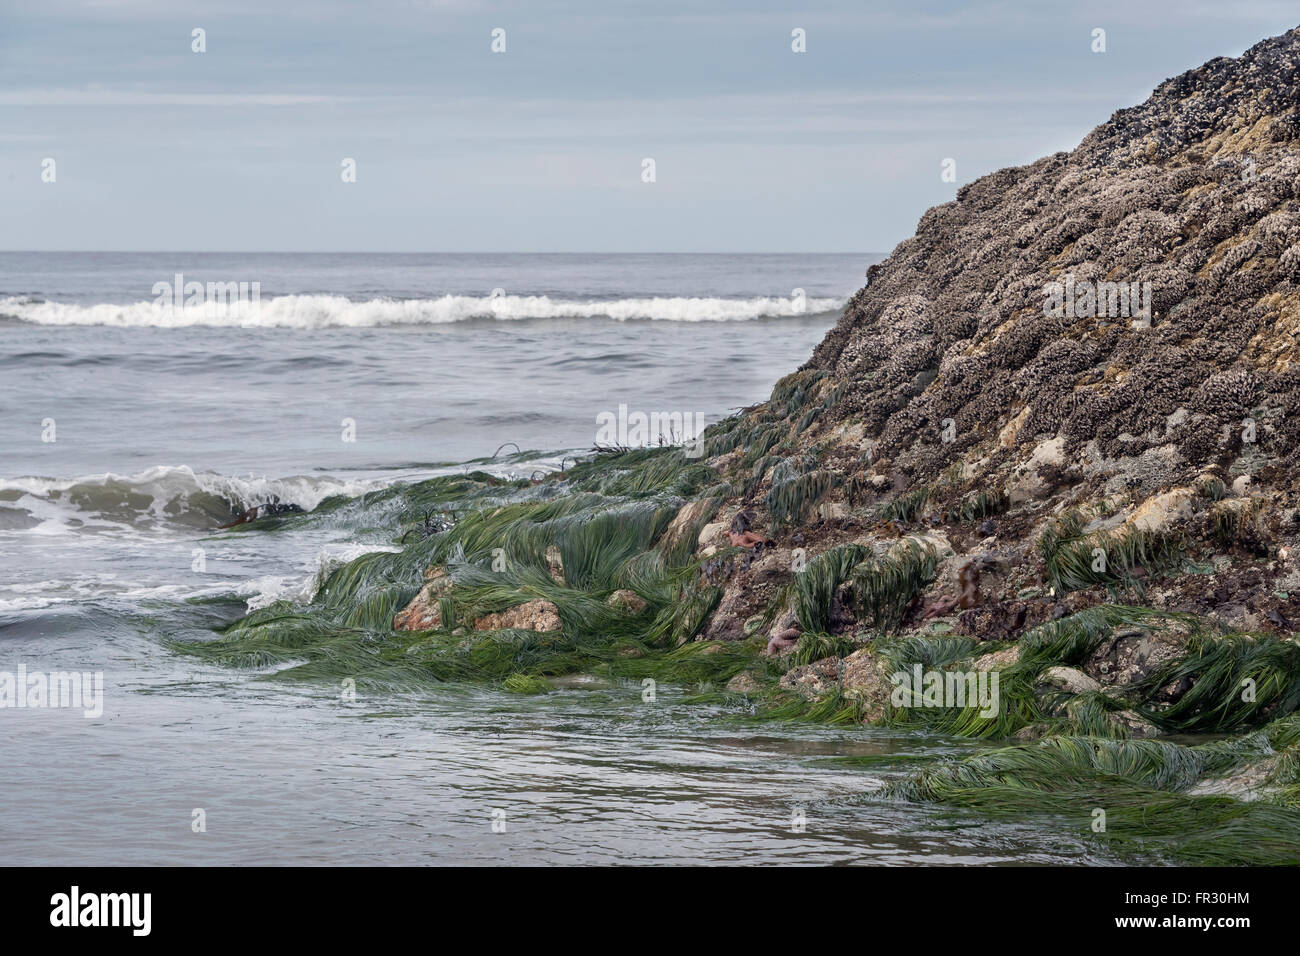 Off-shore rocks at low tide, Chesterman Beach, Tofino, British Columbia, Canada Stock Photo